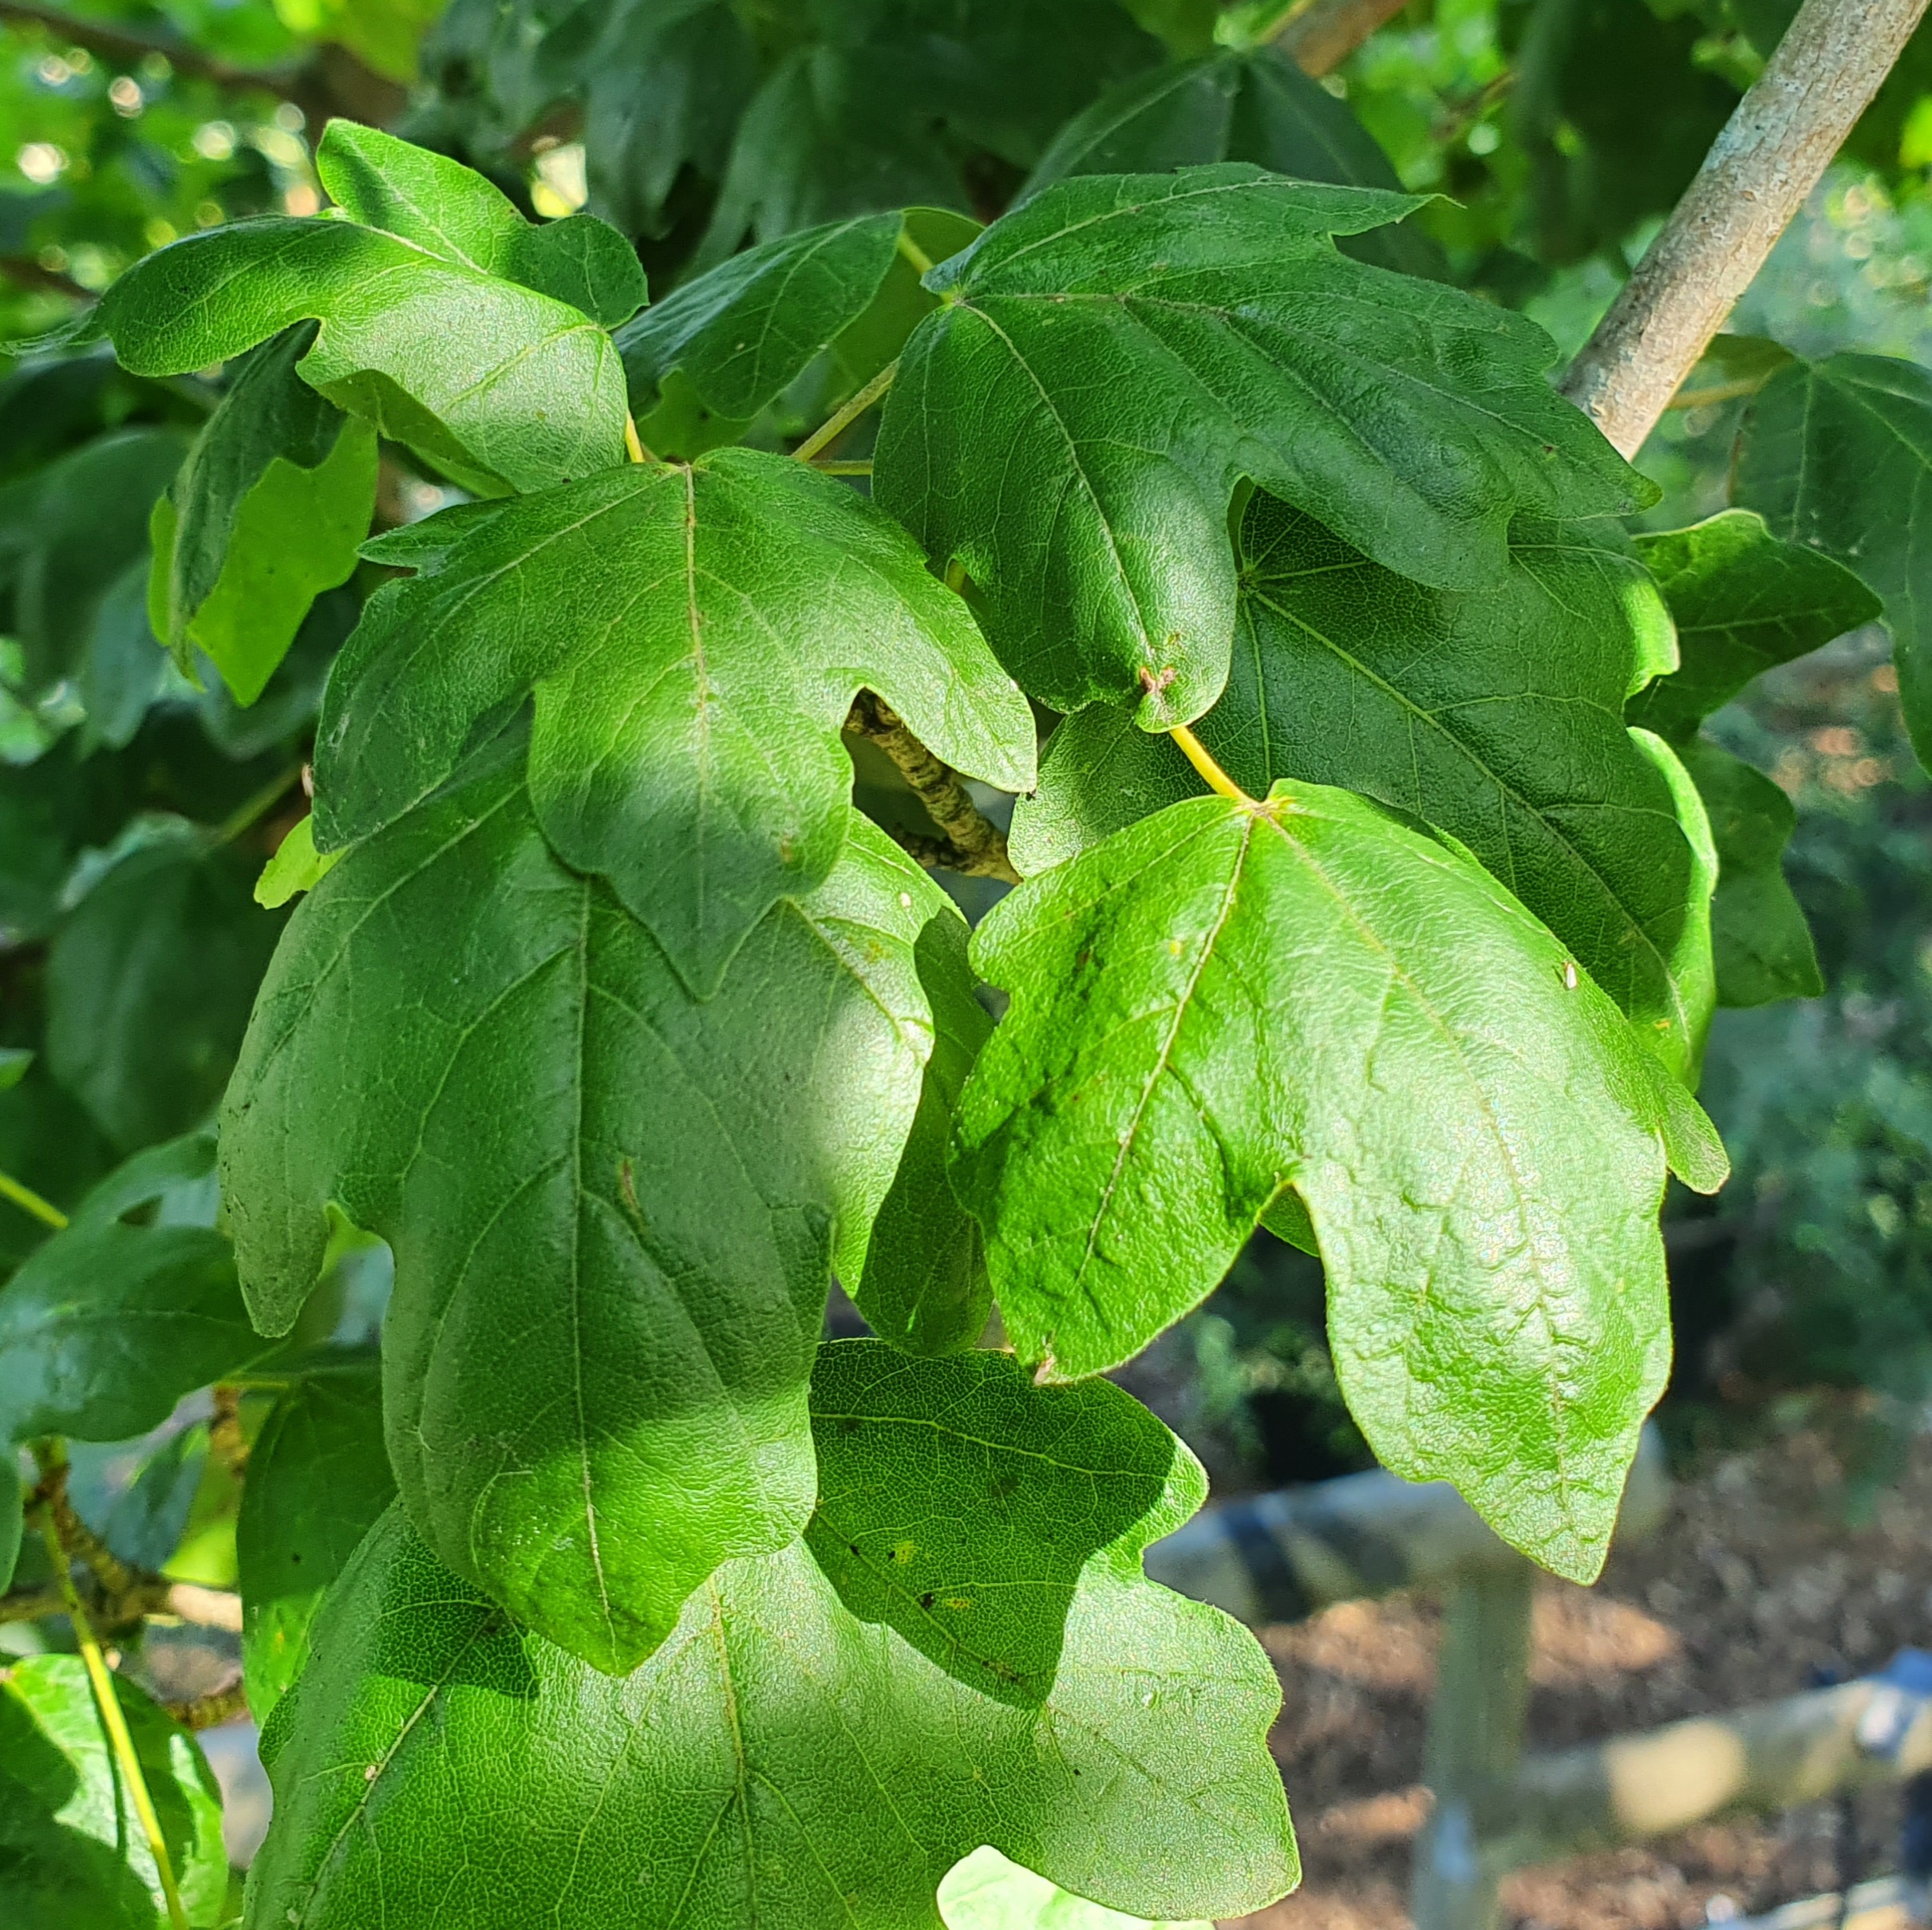 Acer campestre Elsrijk - Field Maple